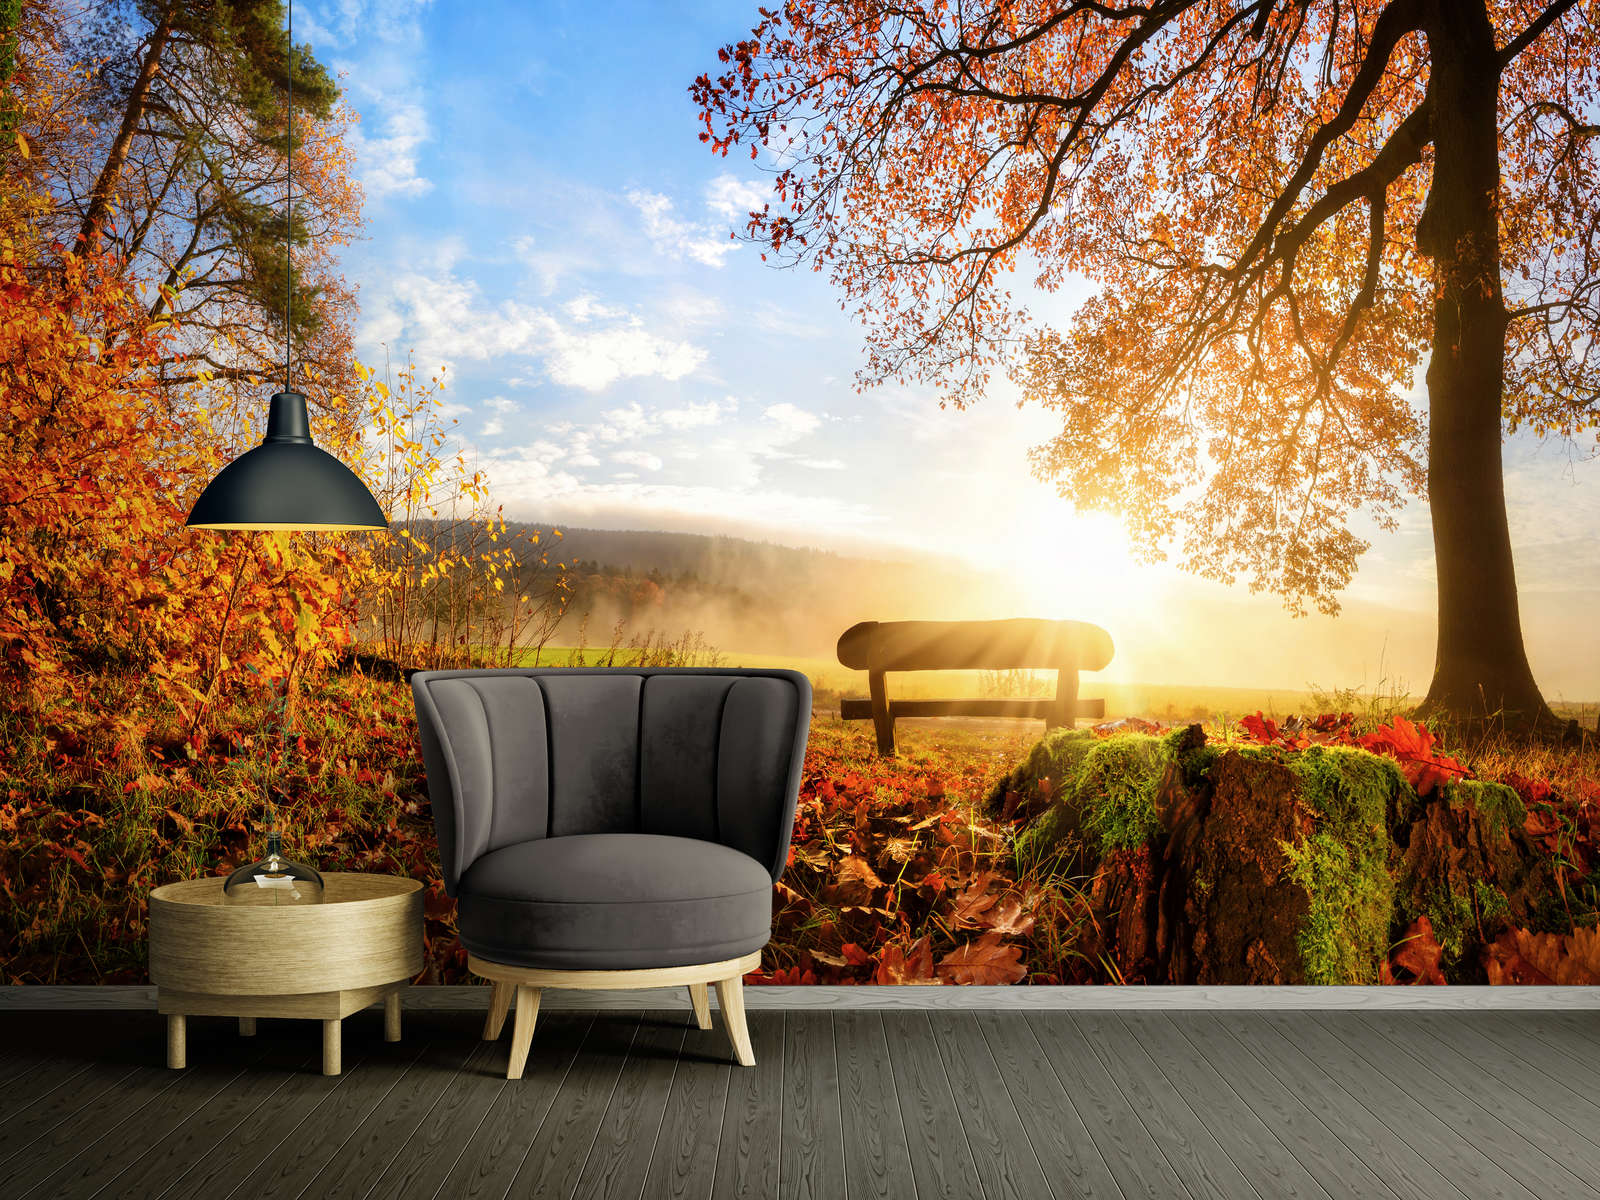             Fototapete Bank im Wald an einem Herbstmorgen – Premium Glattvlies
        